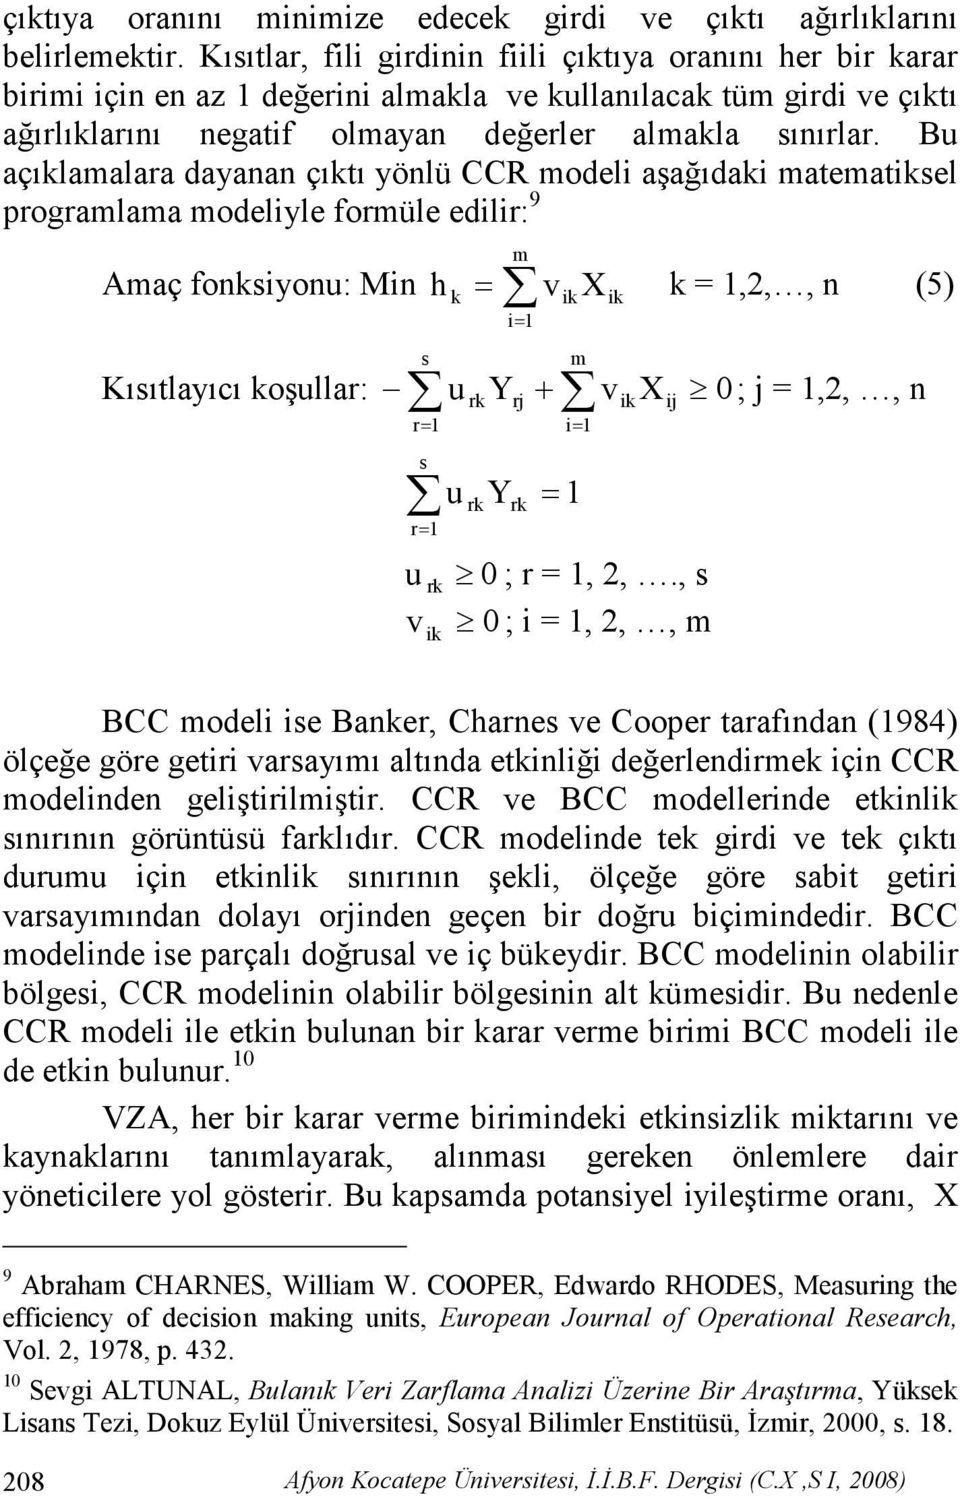 Bu açıklamalara dayanan çıktı yönlü CCR modeli aşağıdaki matematiksel programlama modeliyle formüle edilir: 9 Amaç fonksiyonu: Min m h = v X k =,2,, n (5) k i= Kısıtlayıcı koşullar: u Yrj + ik s m rk